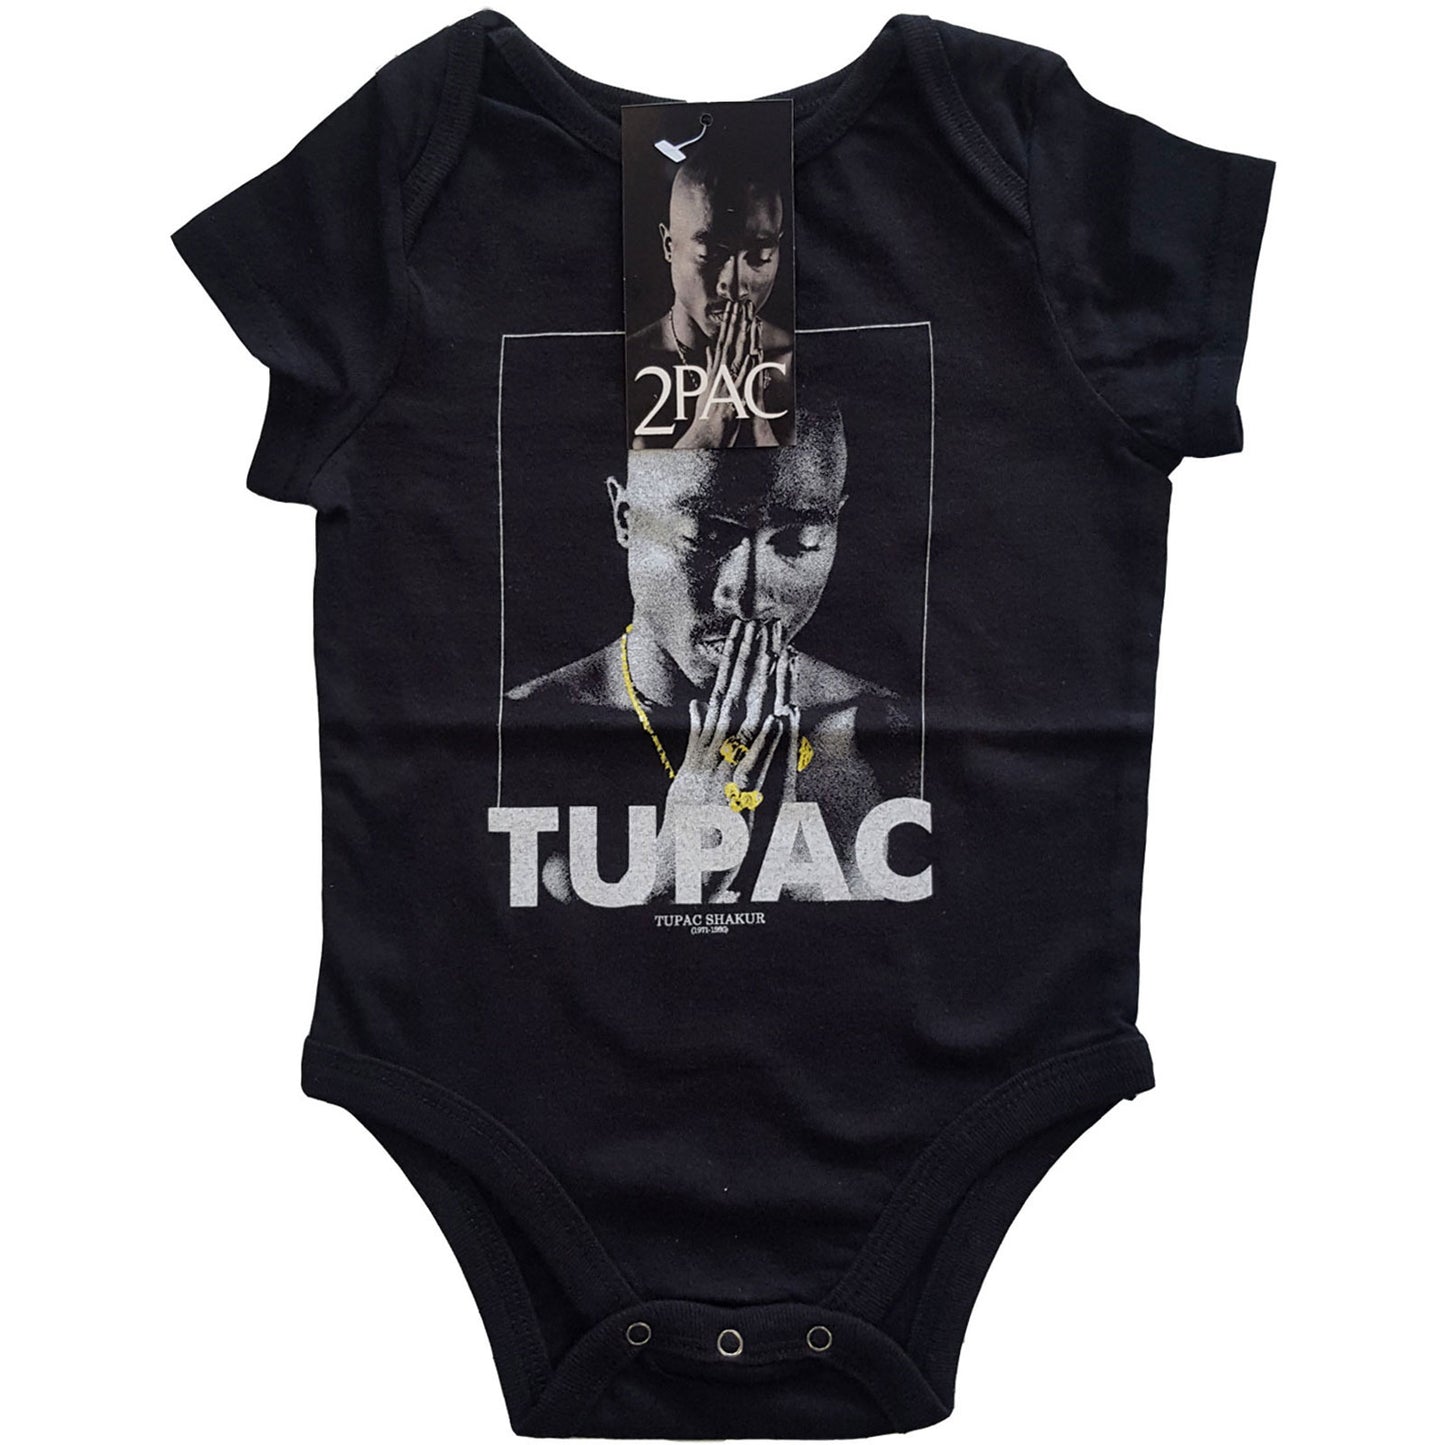 Tupac Baby Grows: Praying